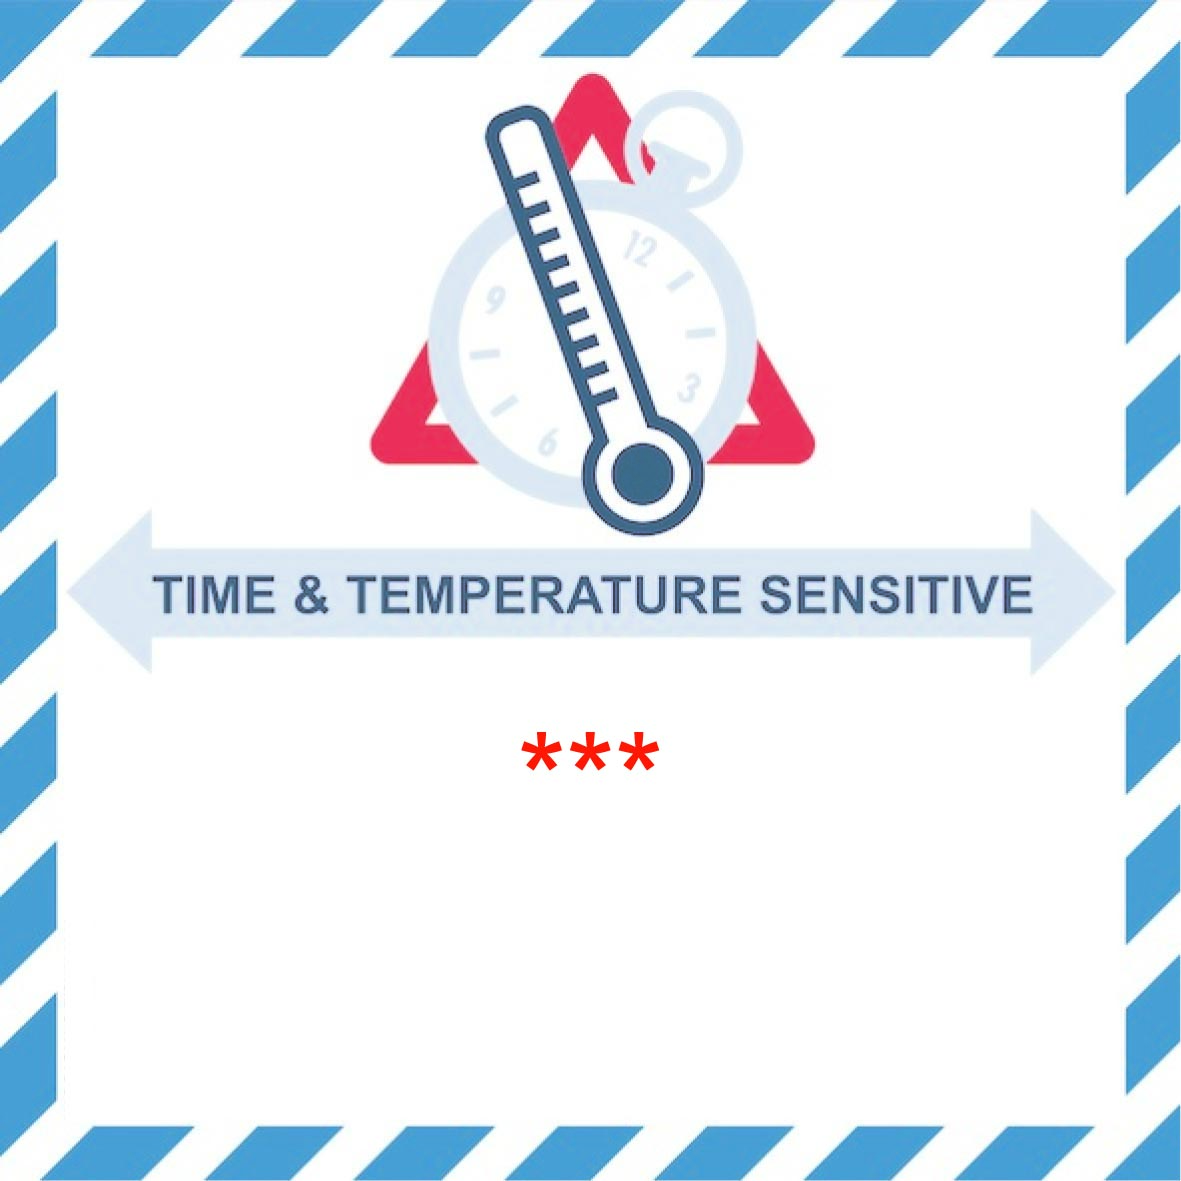 IATA-Kennzeichen "Time & Temperature Sensetive" mit Eindruck der Temperatur